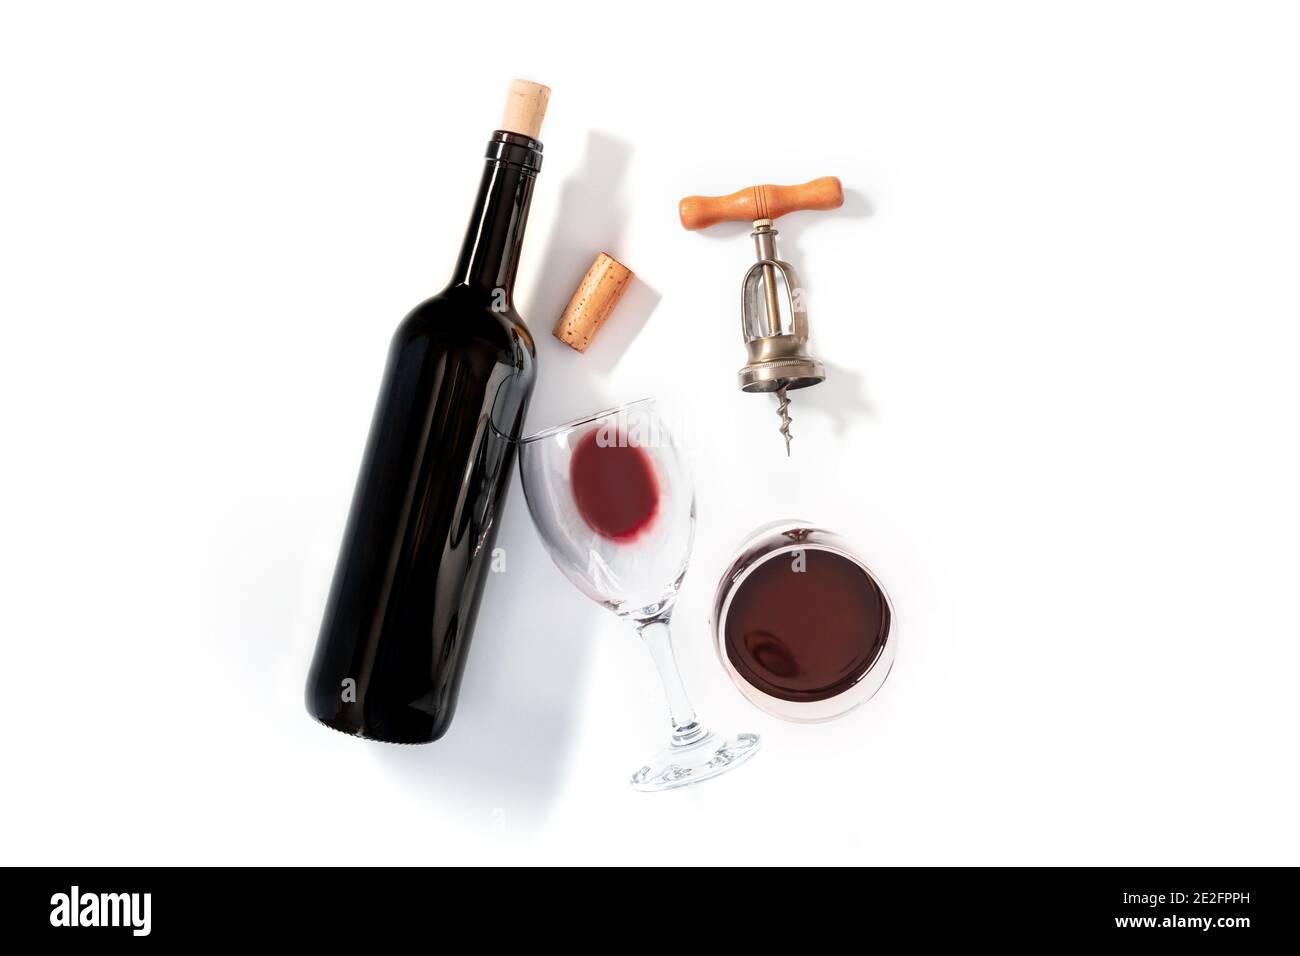 Weinprobe, über Kopf flach auf weißem Hintergrund, mit einem Korken, einem Vintage Korkenzieher, einer Flasche und zwei Gläsern Stockfoto